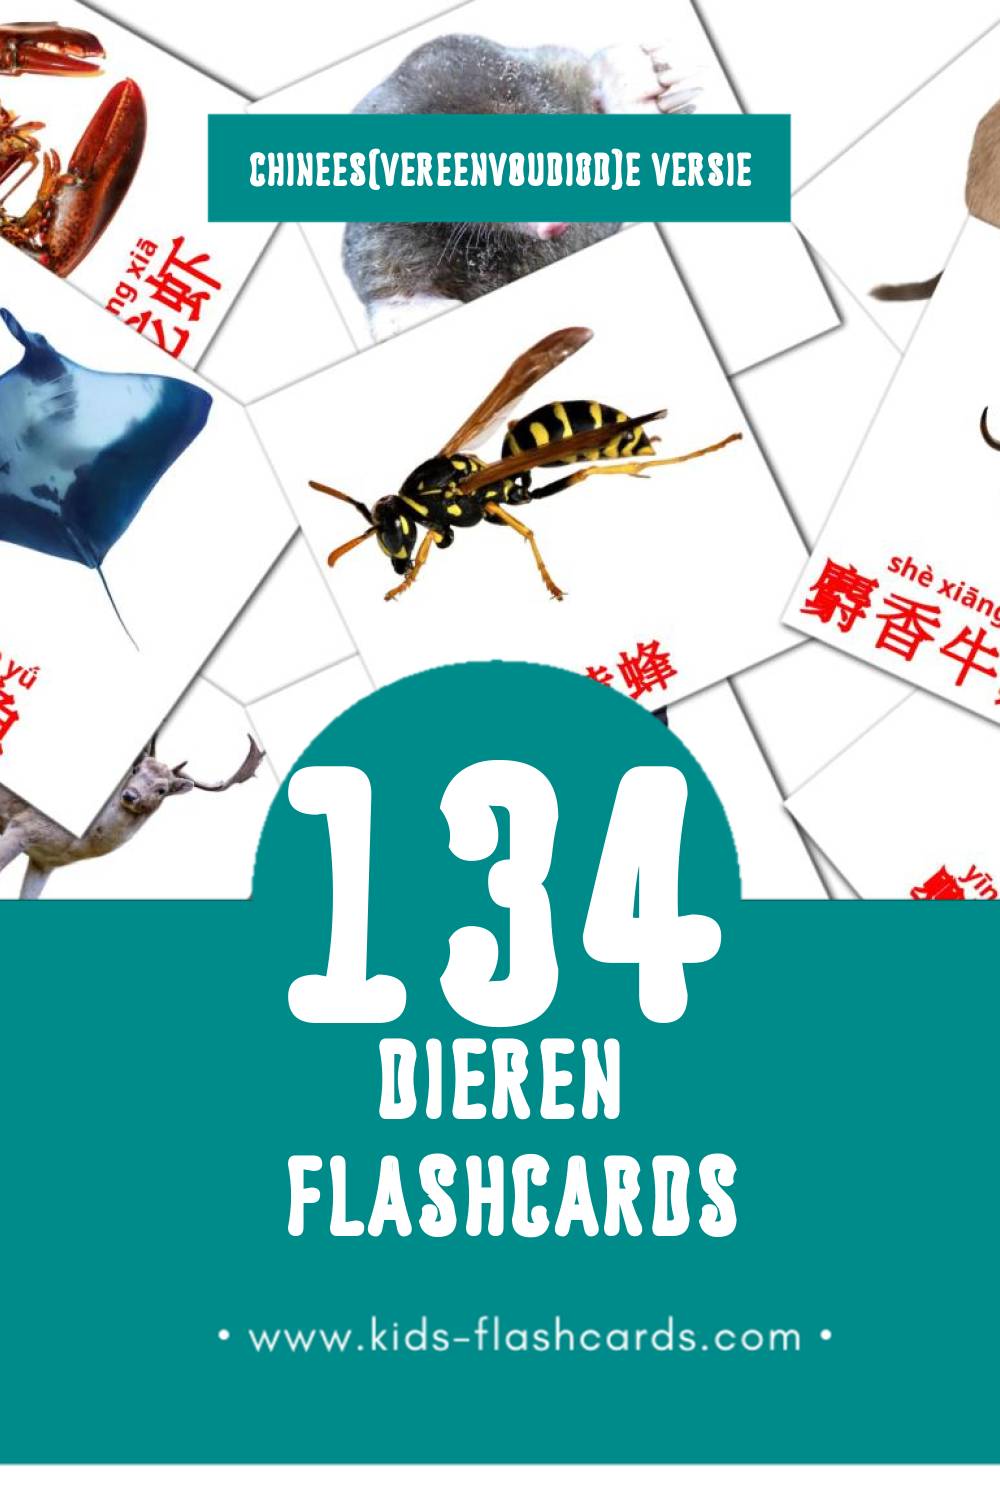 Visuele 动物 Flashcards voor Kleuters (134 kaarten in het Chinees(vereenvoudigd))